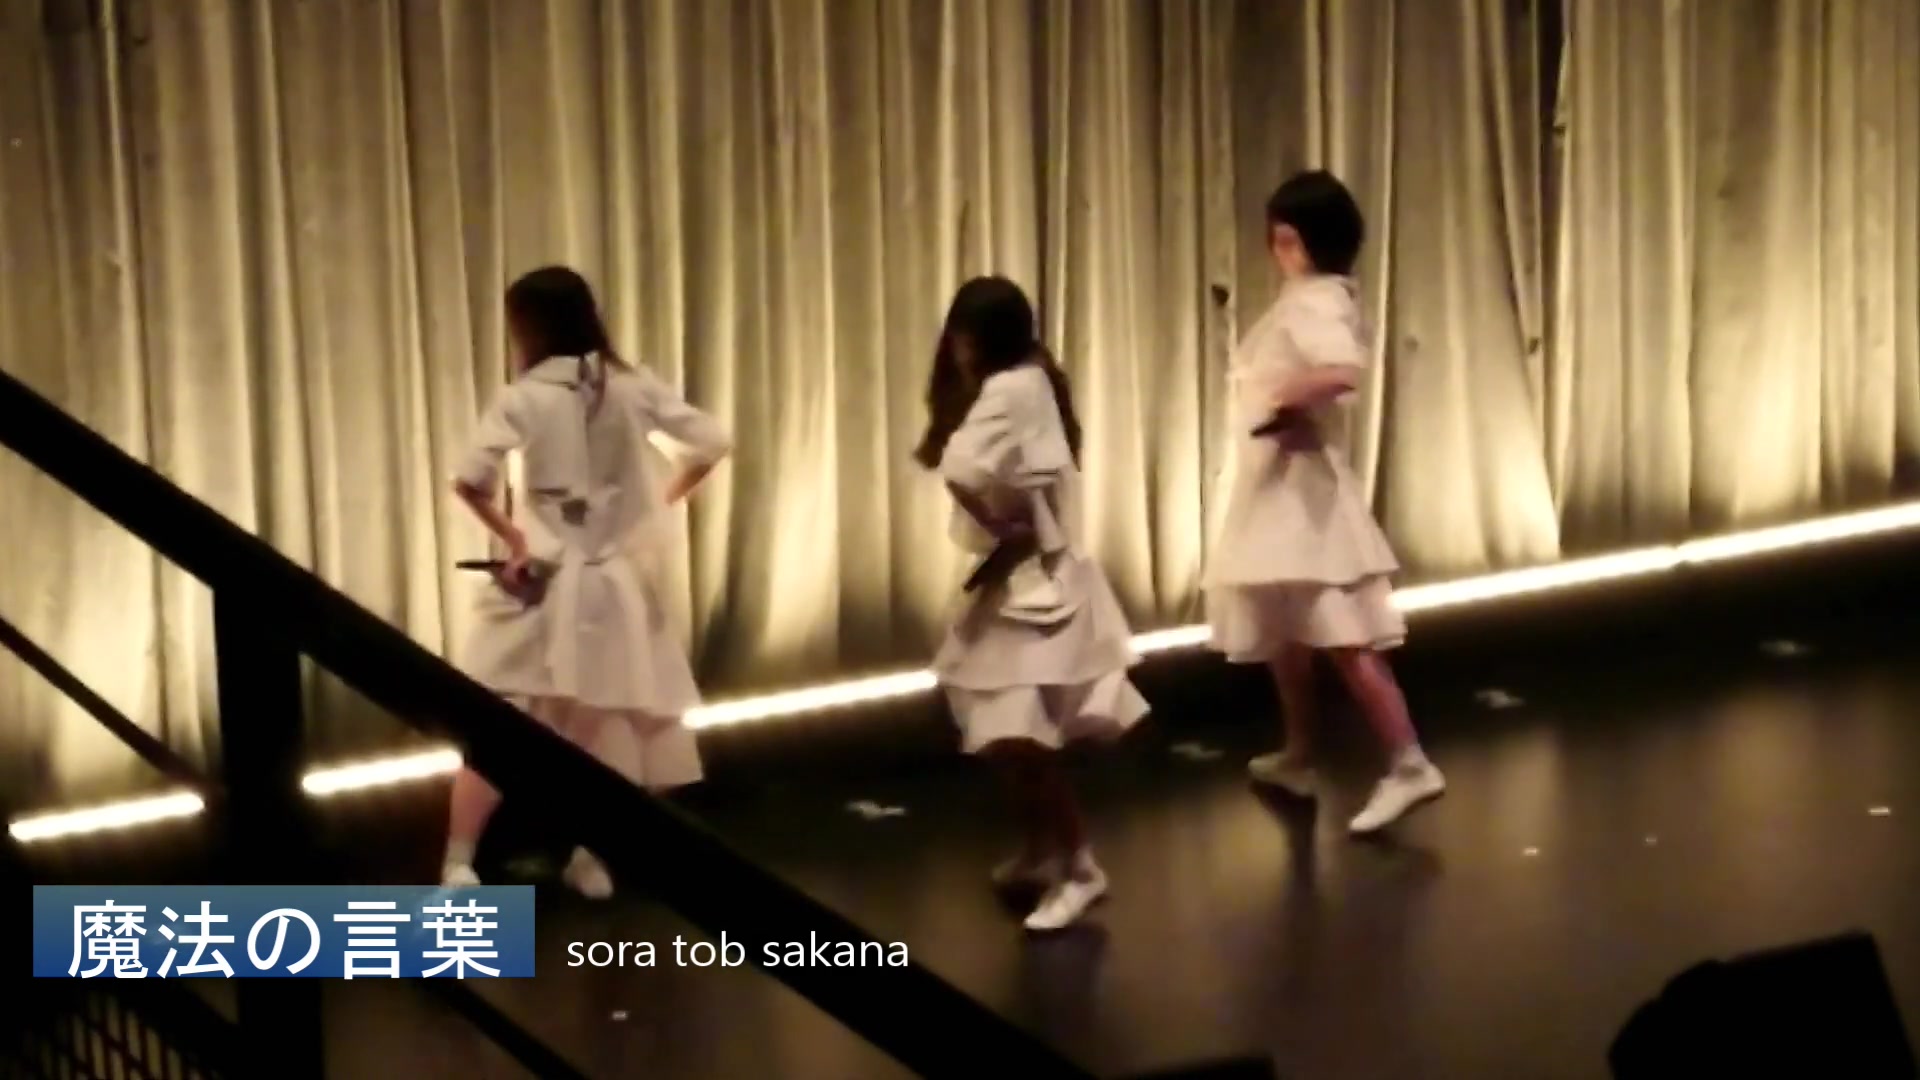 邦楽DVD sora tob sakana / 単独公演 月面の音楽隊 at LIQUIDROOM